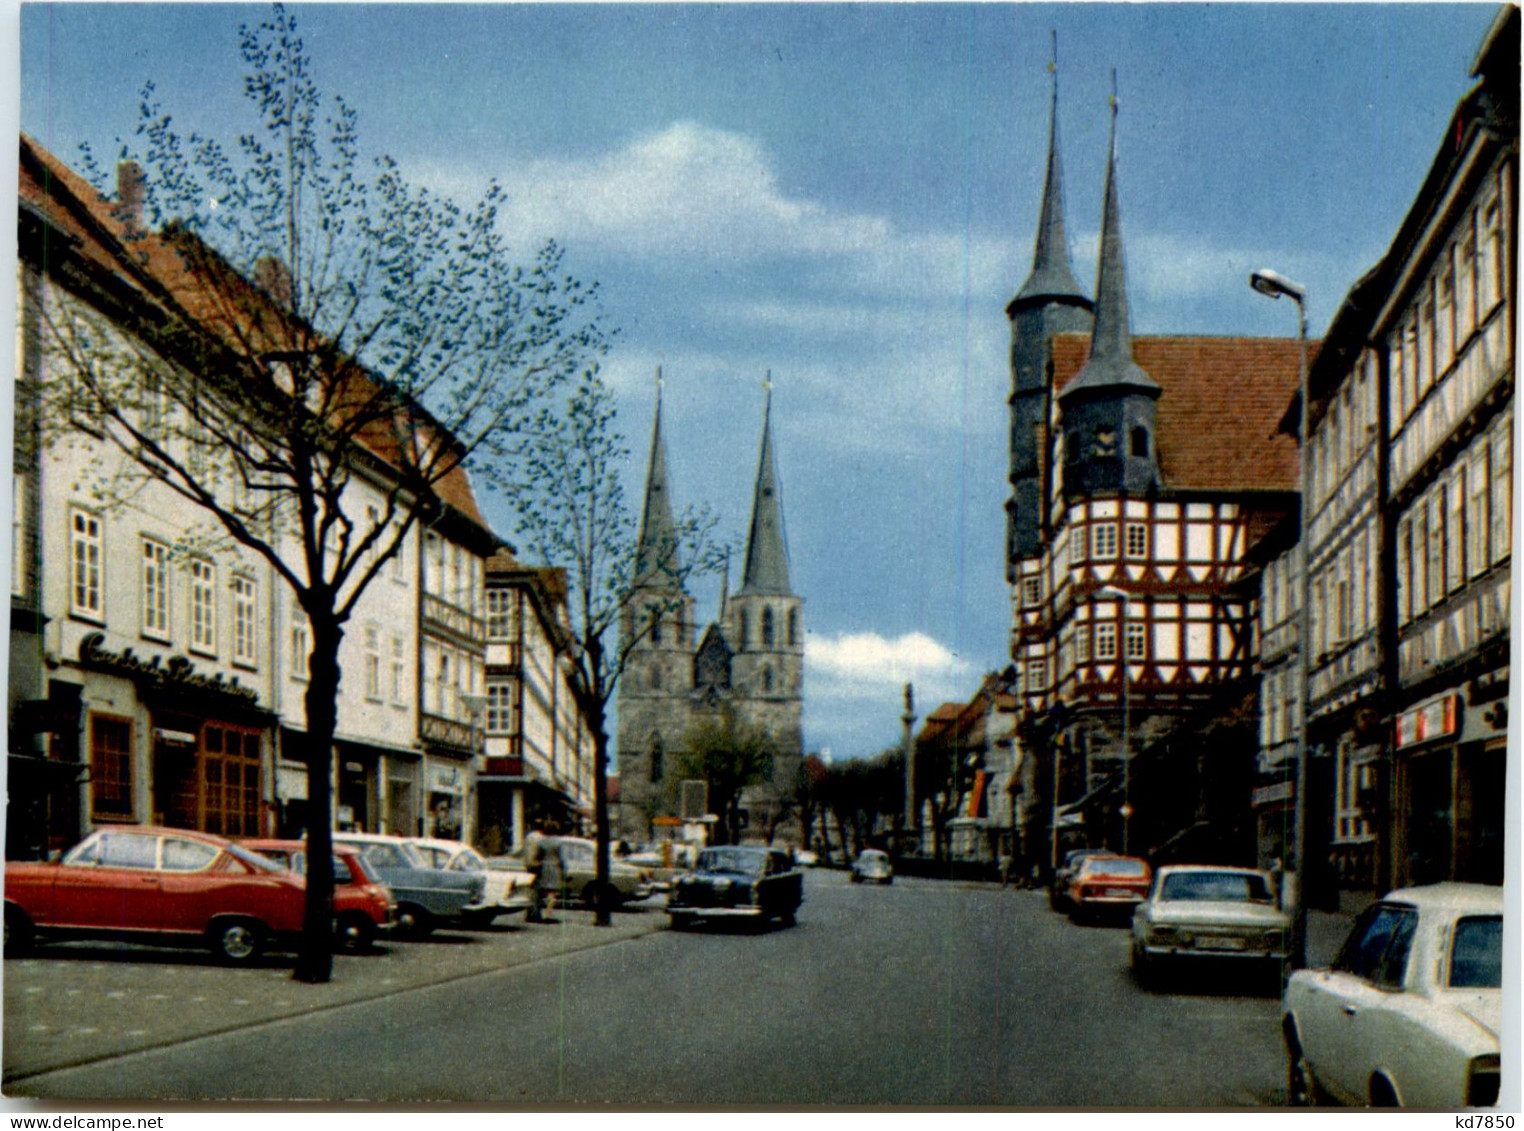 Duderstadt - Goettingen